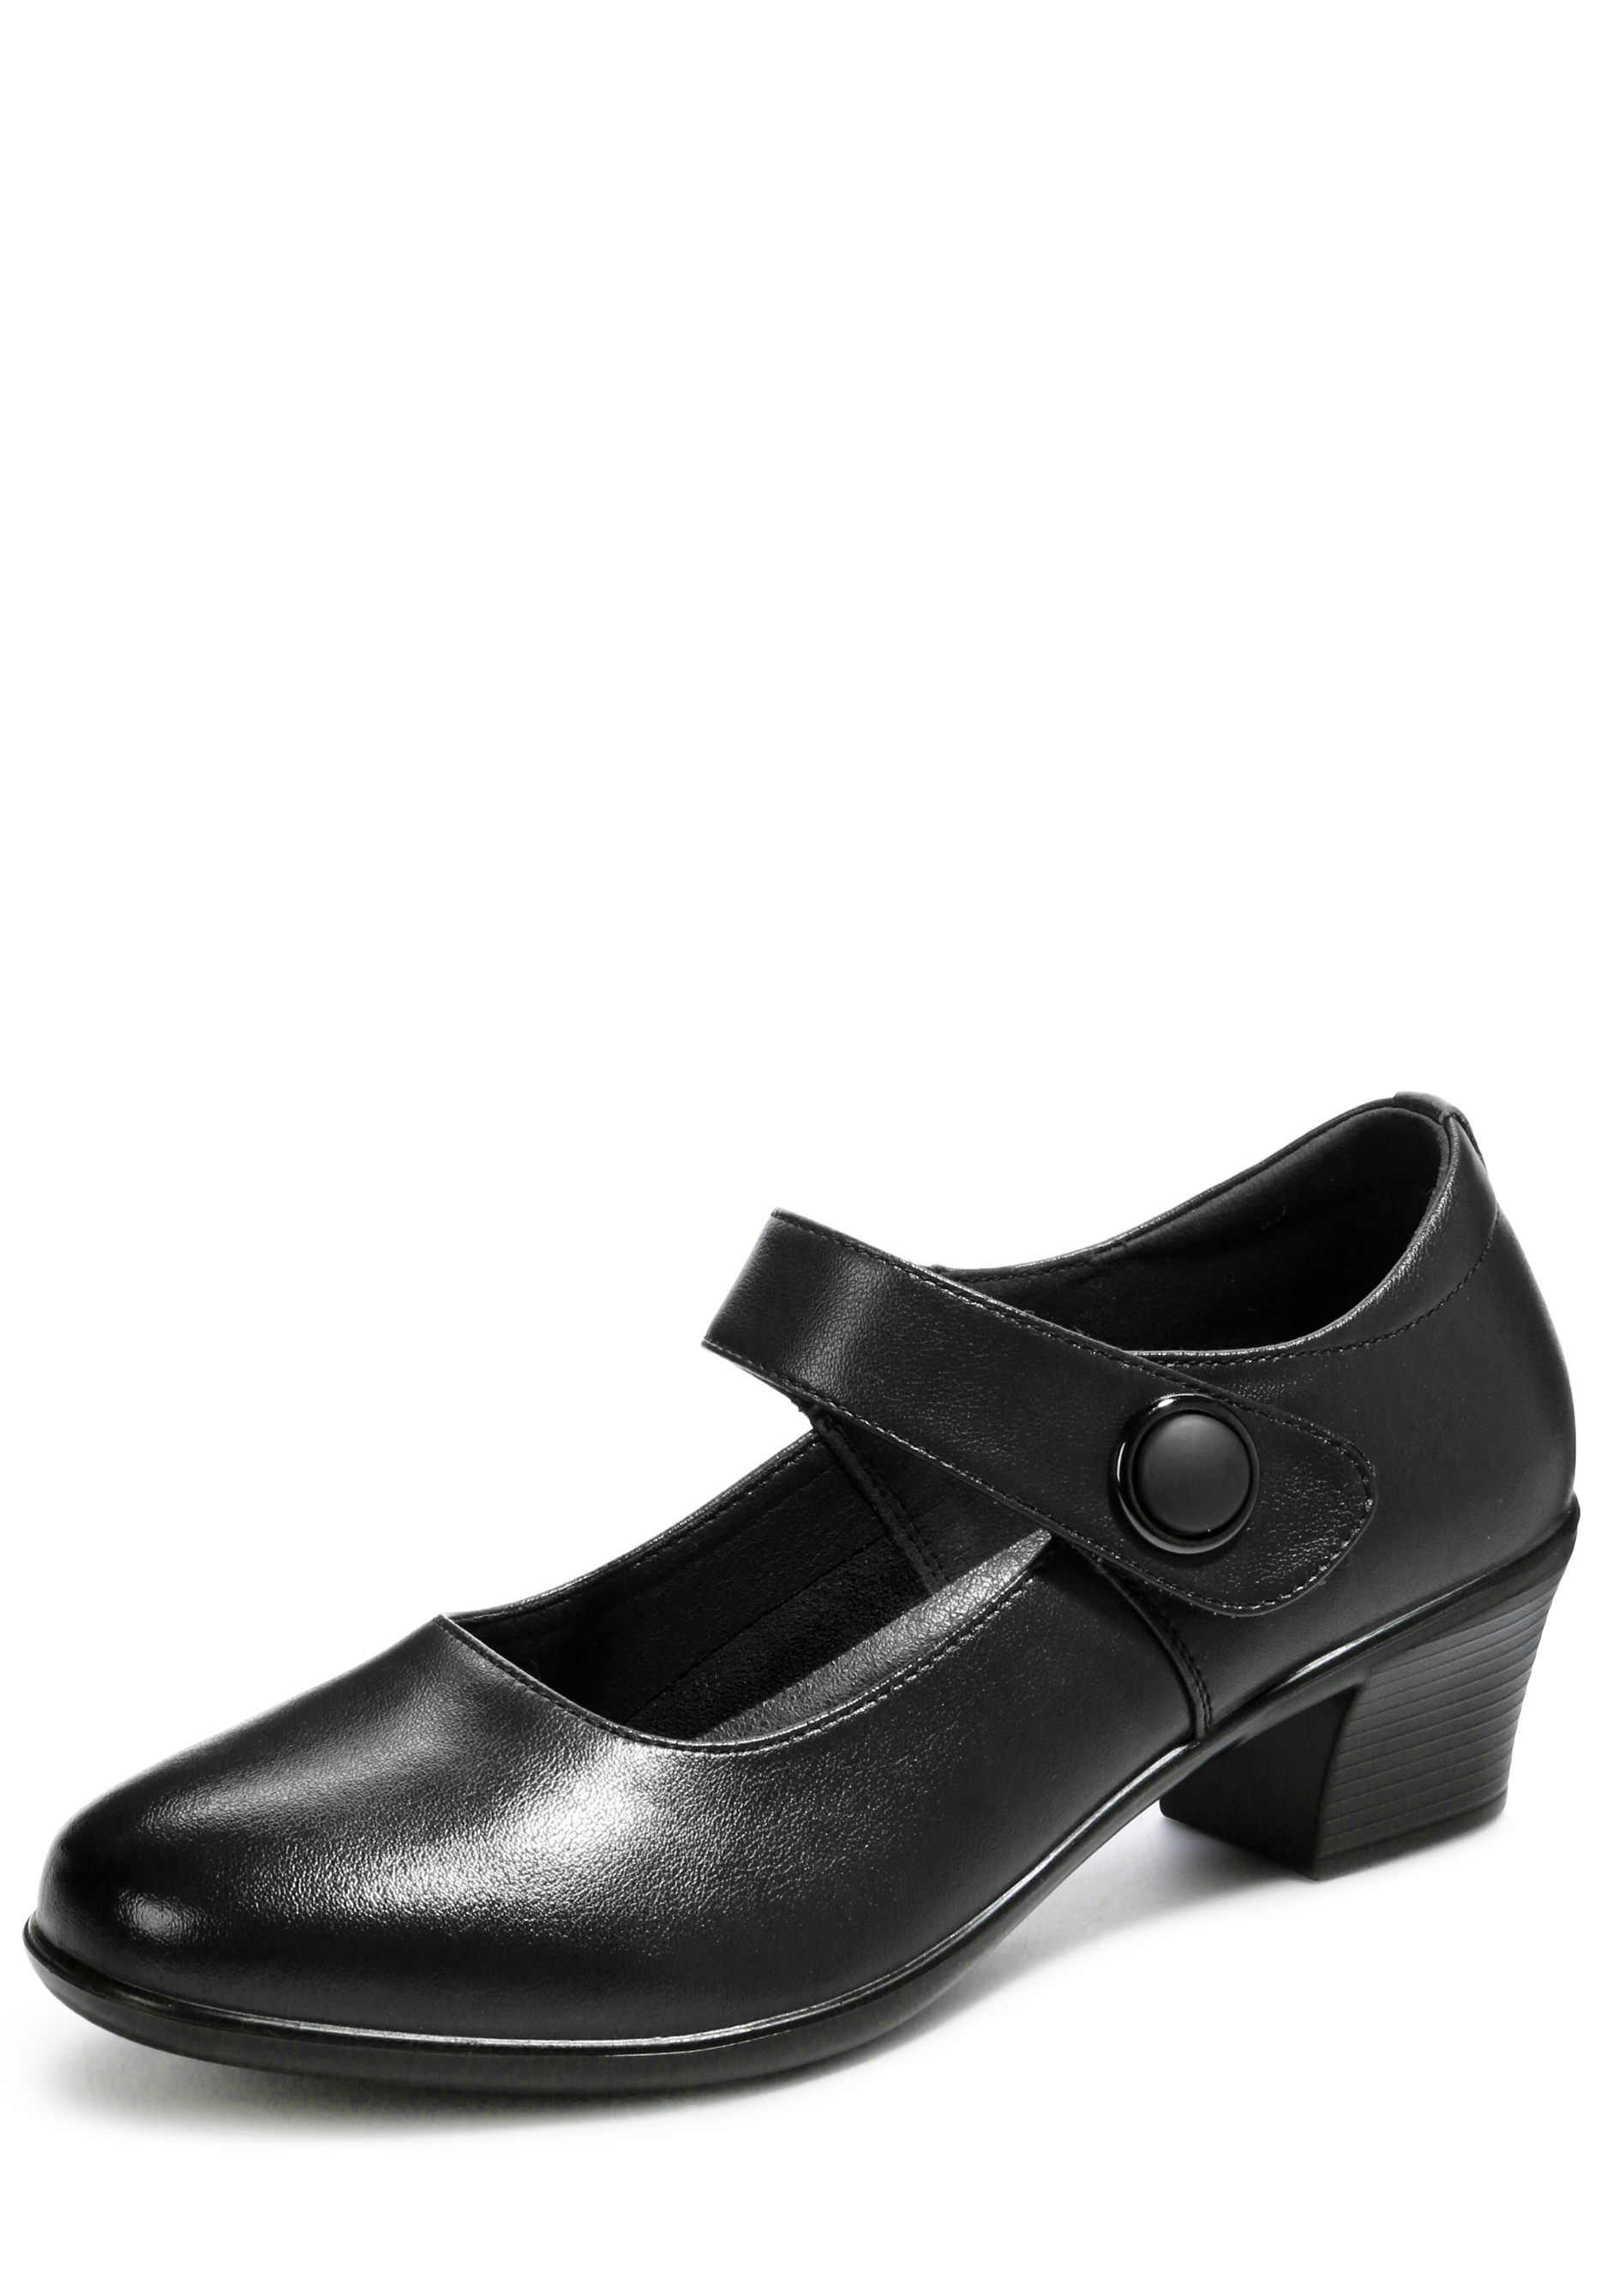 Туфли женские "Клэр" MILORES, размер 36, цвет черный